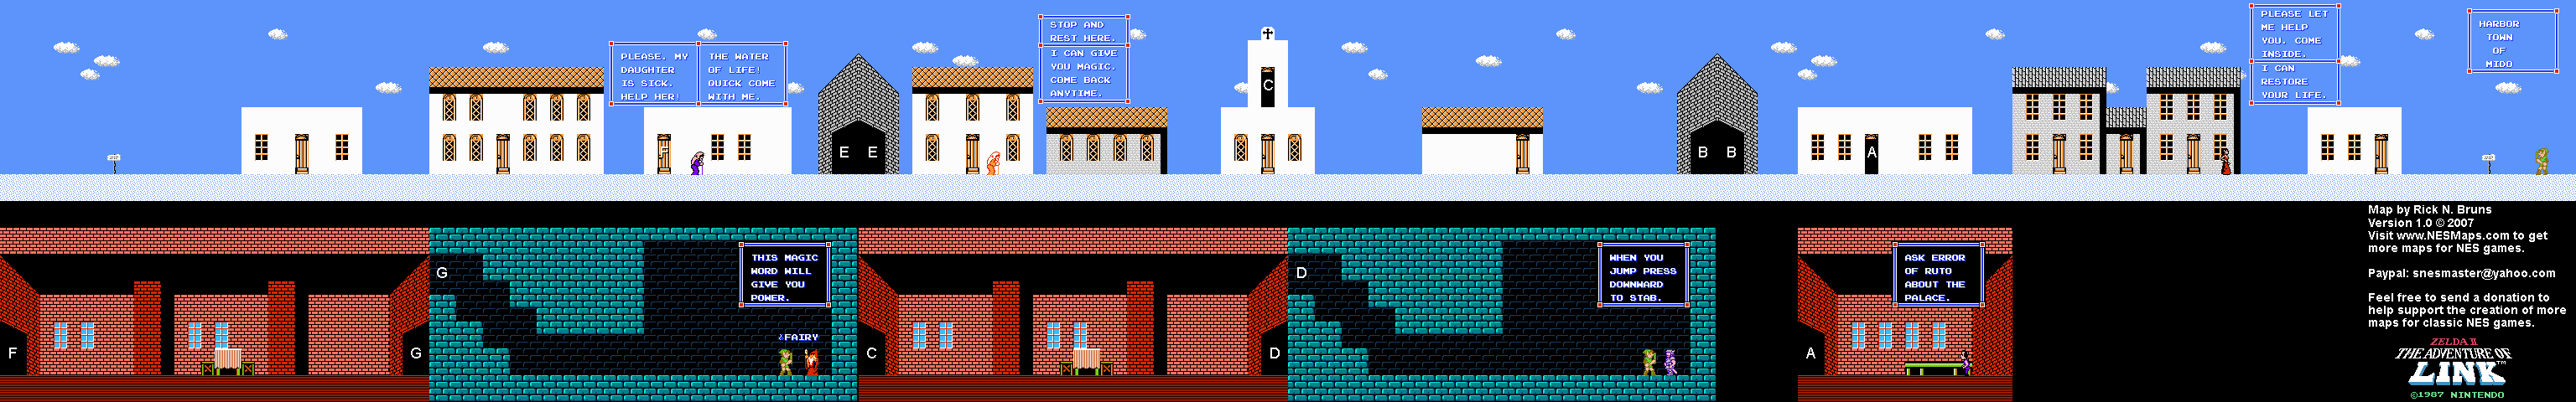 Zelda II The Adventure of Link - Mido Town [17] - NES Map